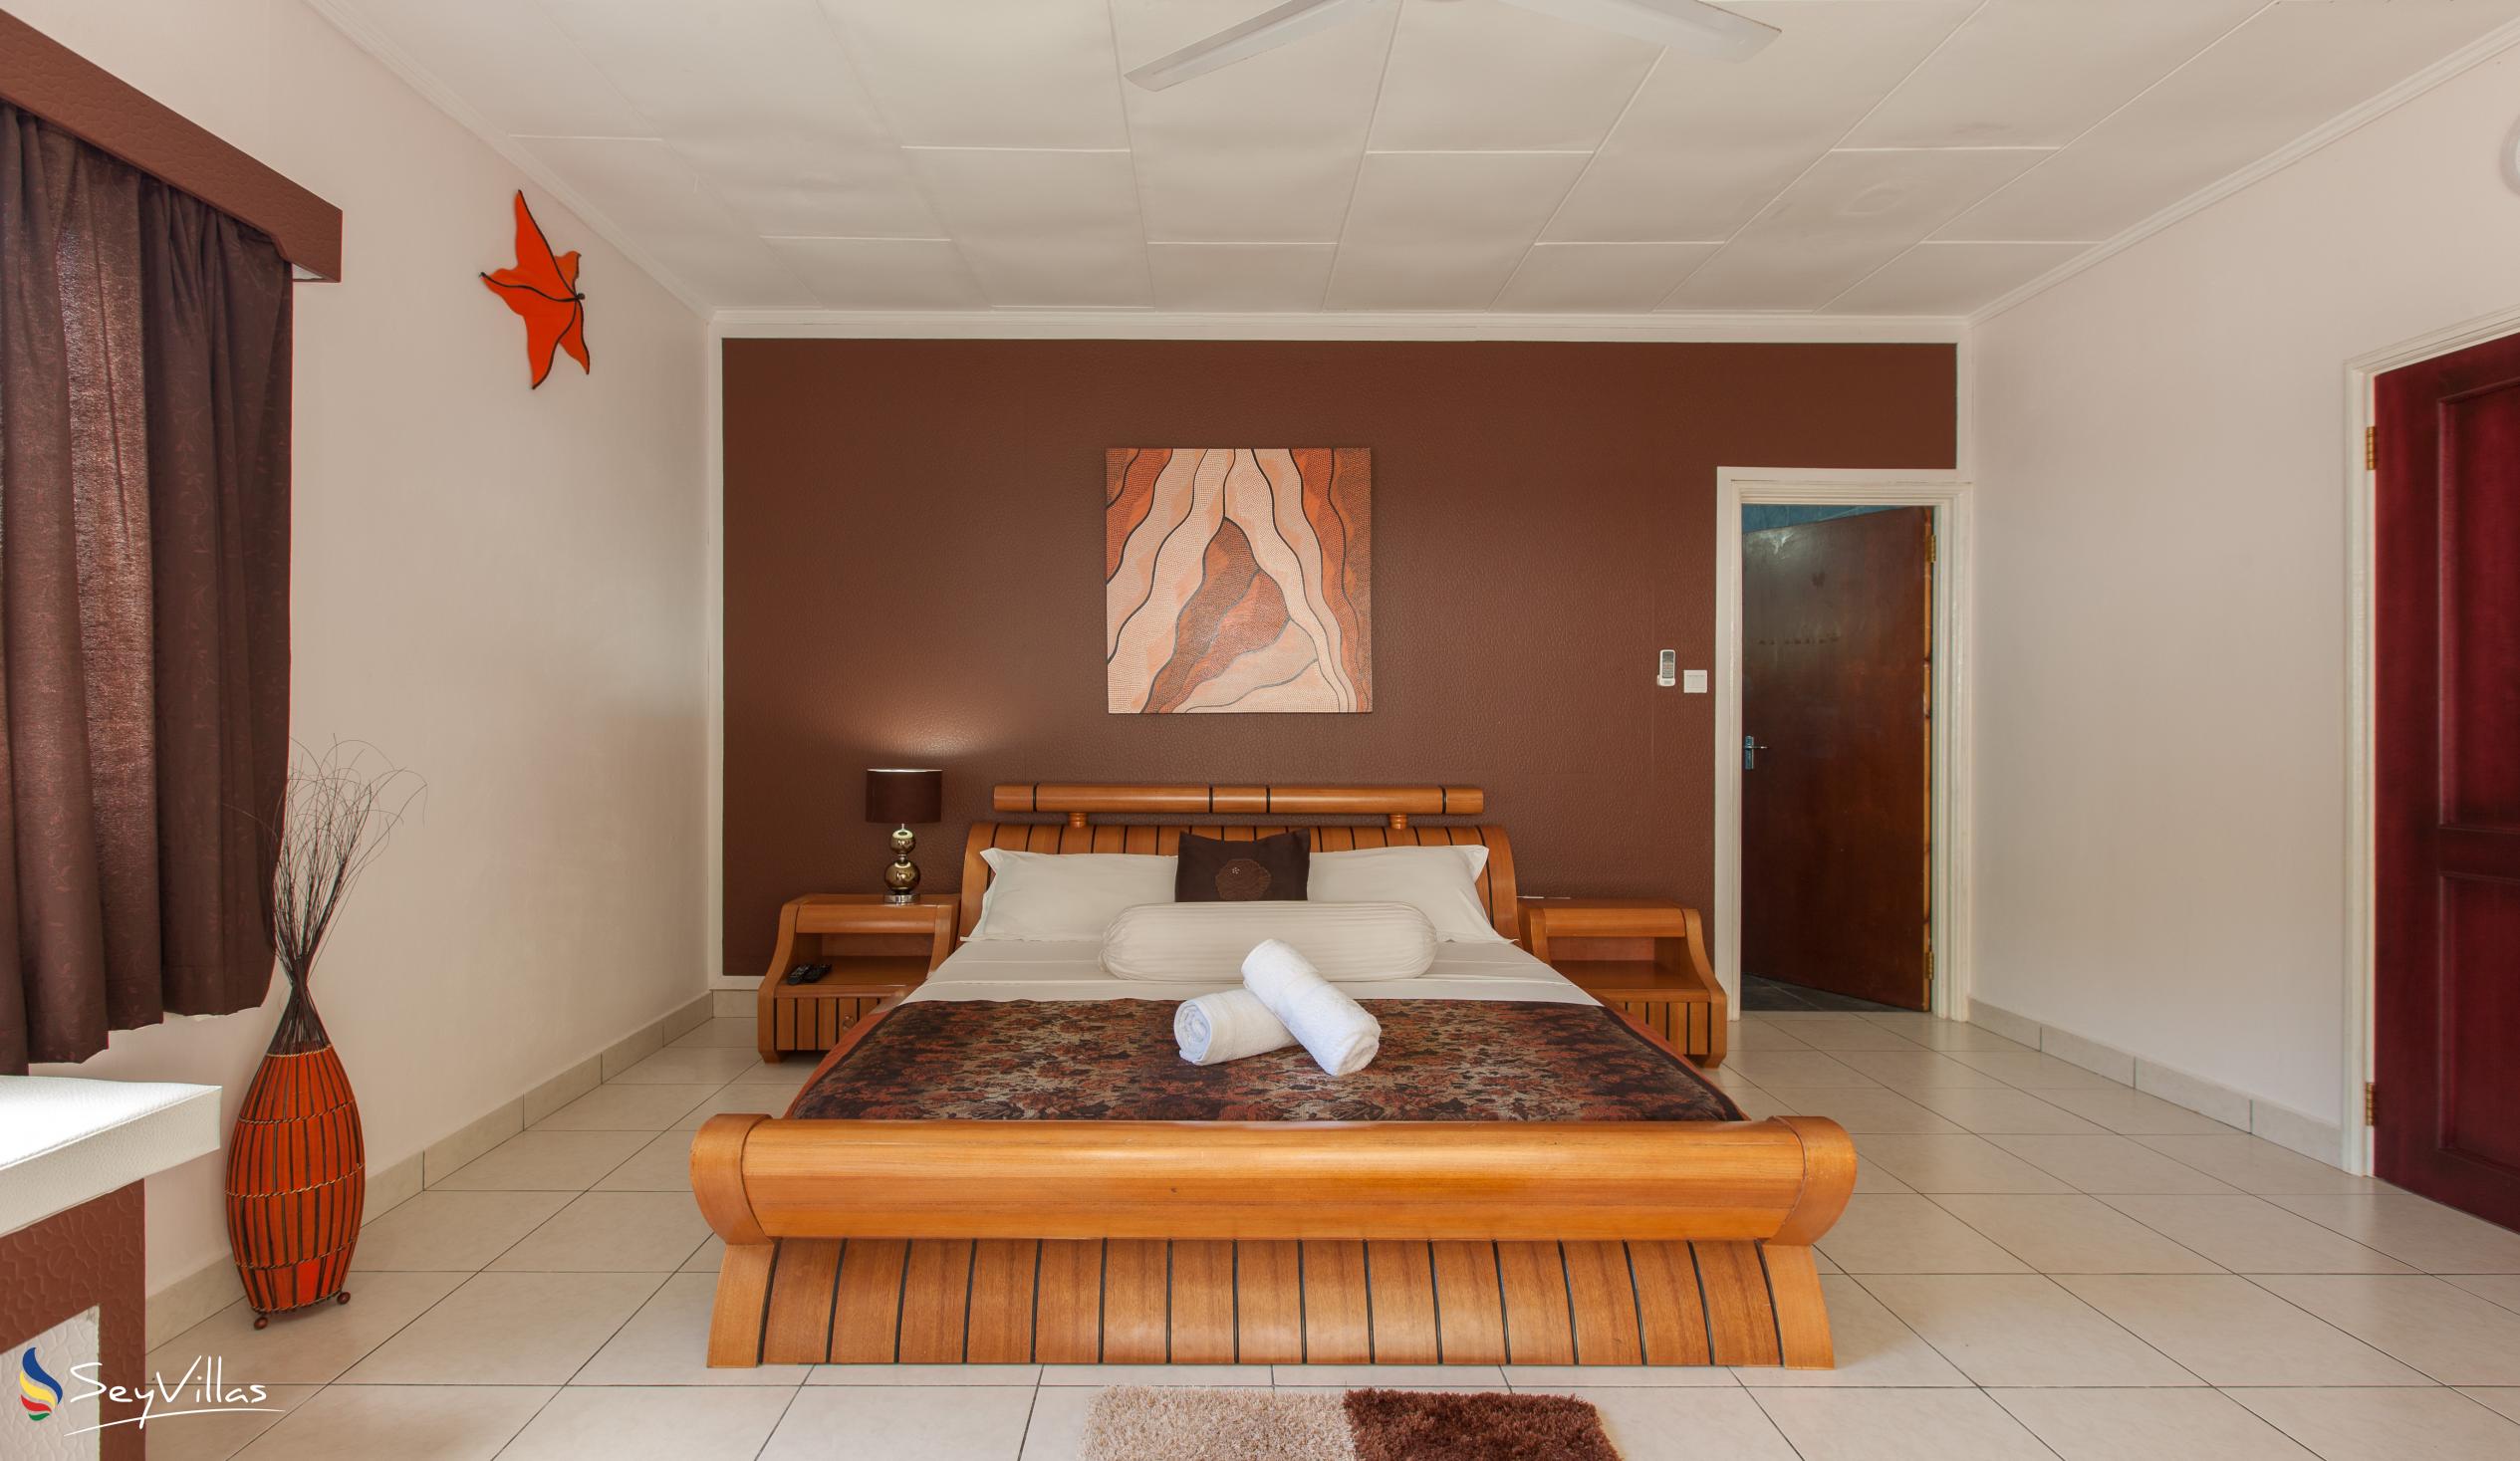 Photo 33: Villa Authentique - King Room - La Digue (Seychelles)